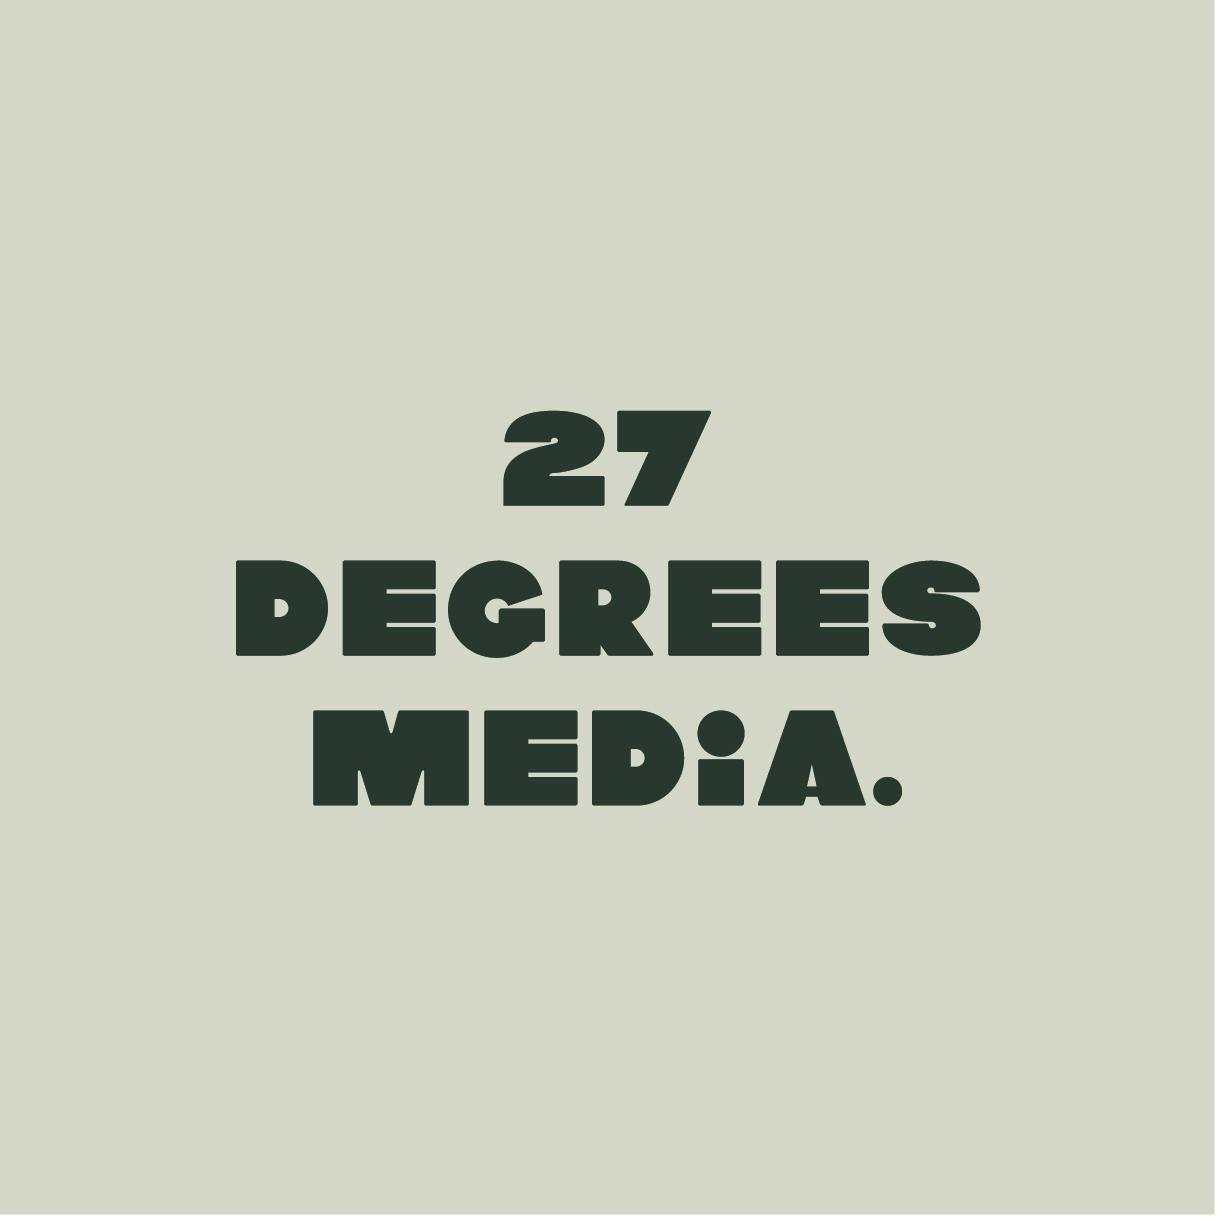 27 Degrees media